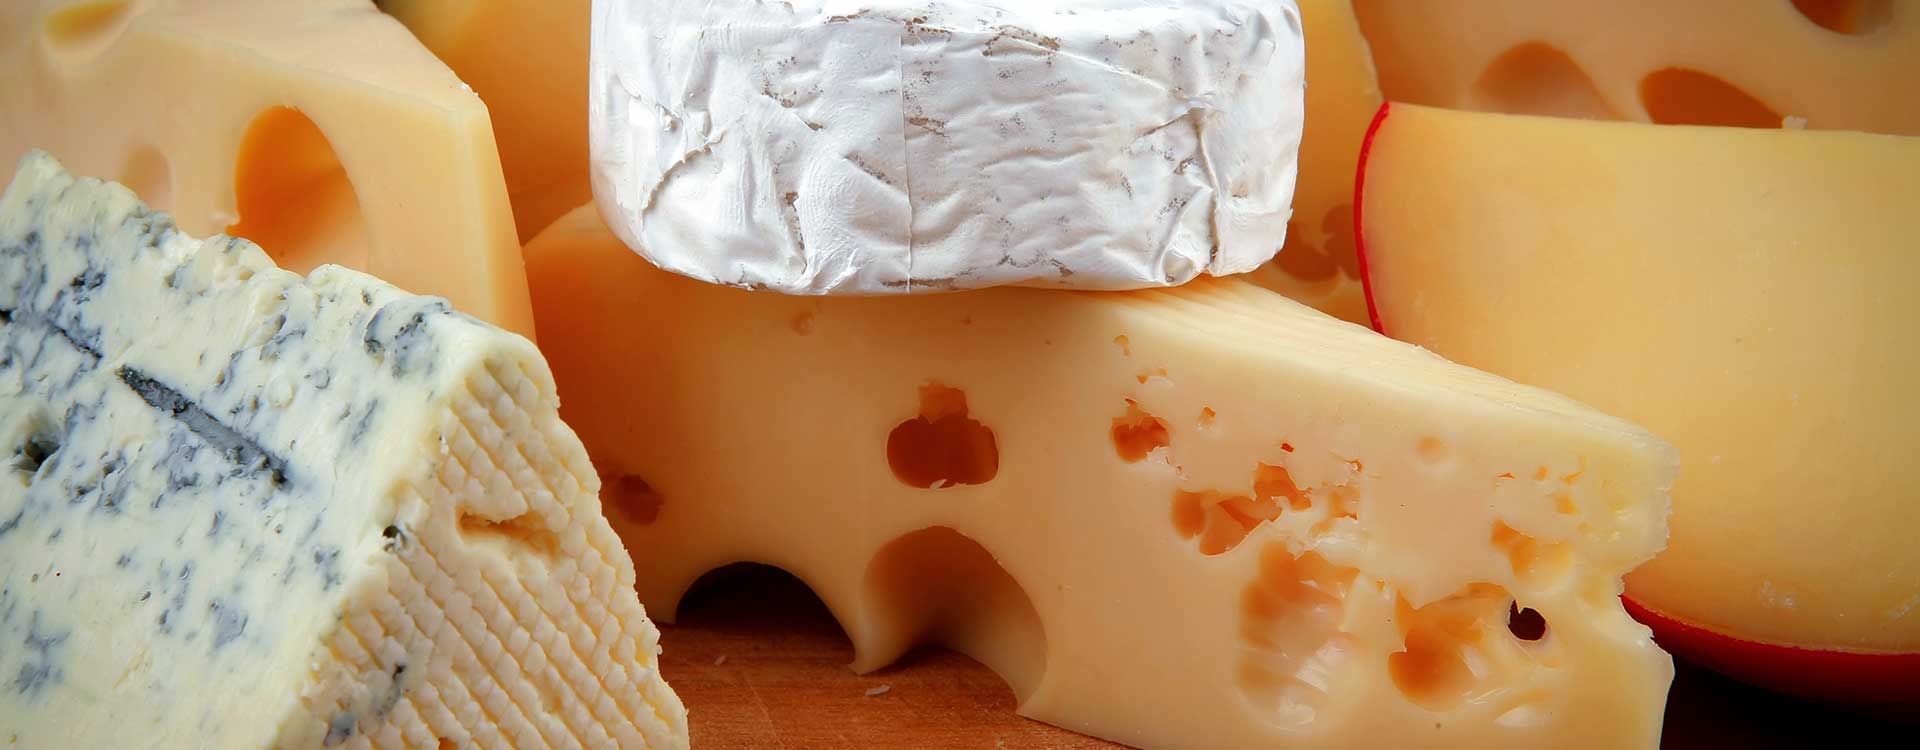 Käse mit Weißschimmelrinde und Käse mit gewaschener Rinde, wie unterscheiden sie sich?